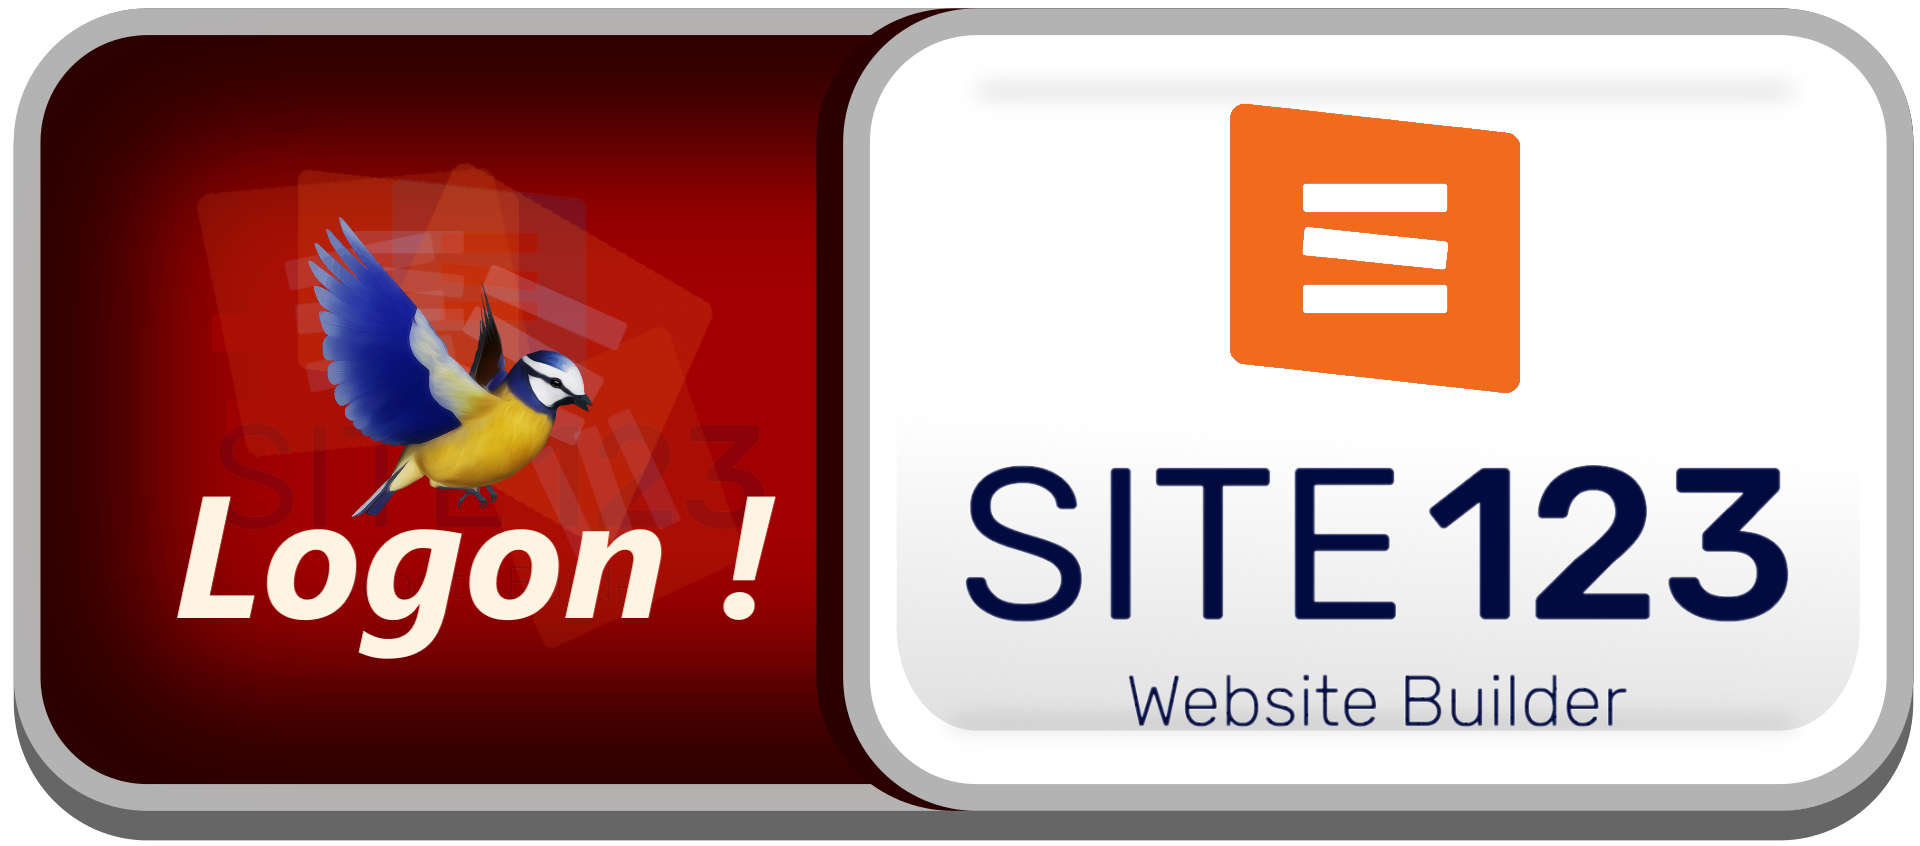 site123-web-builder